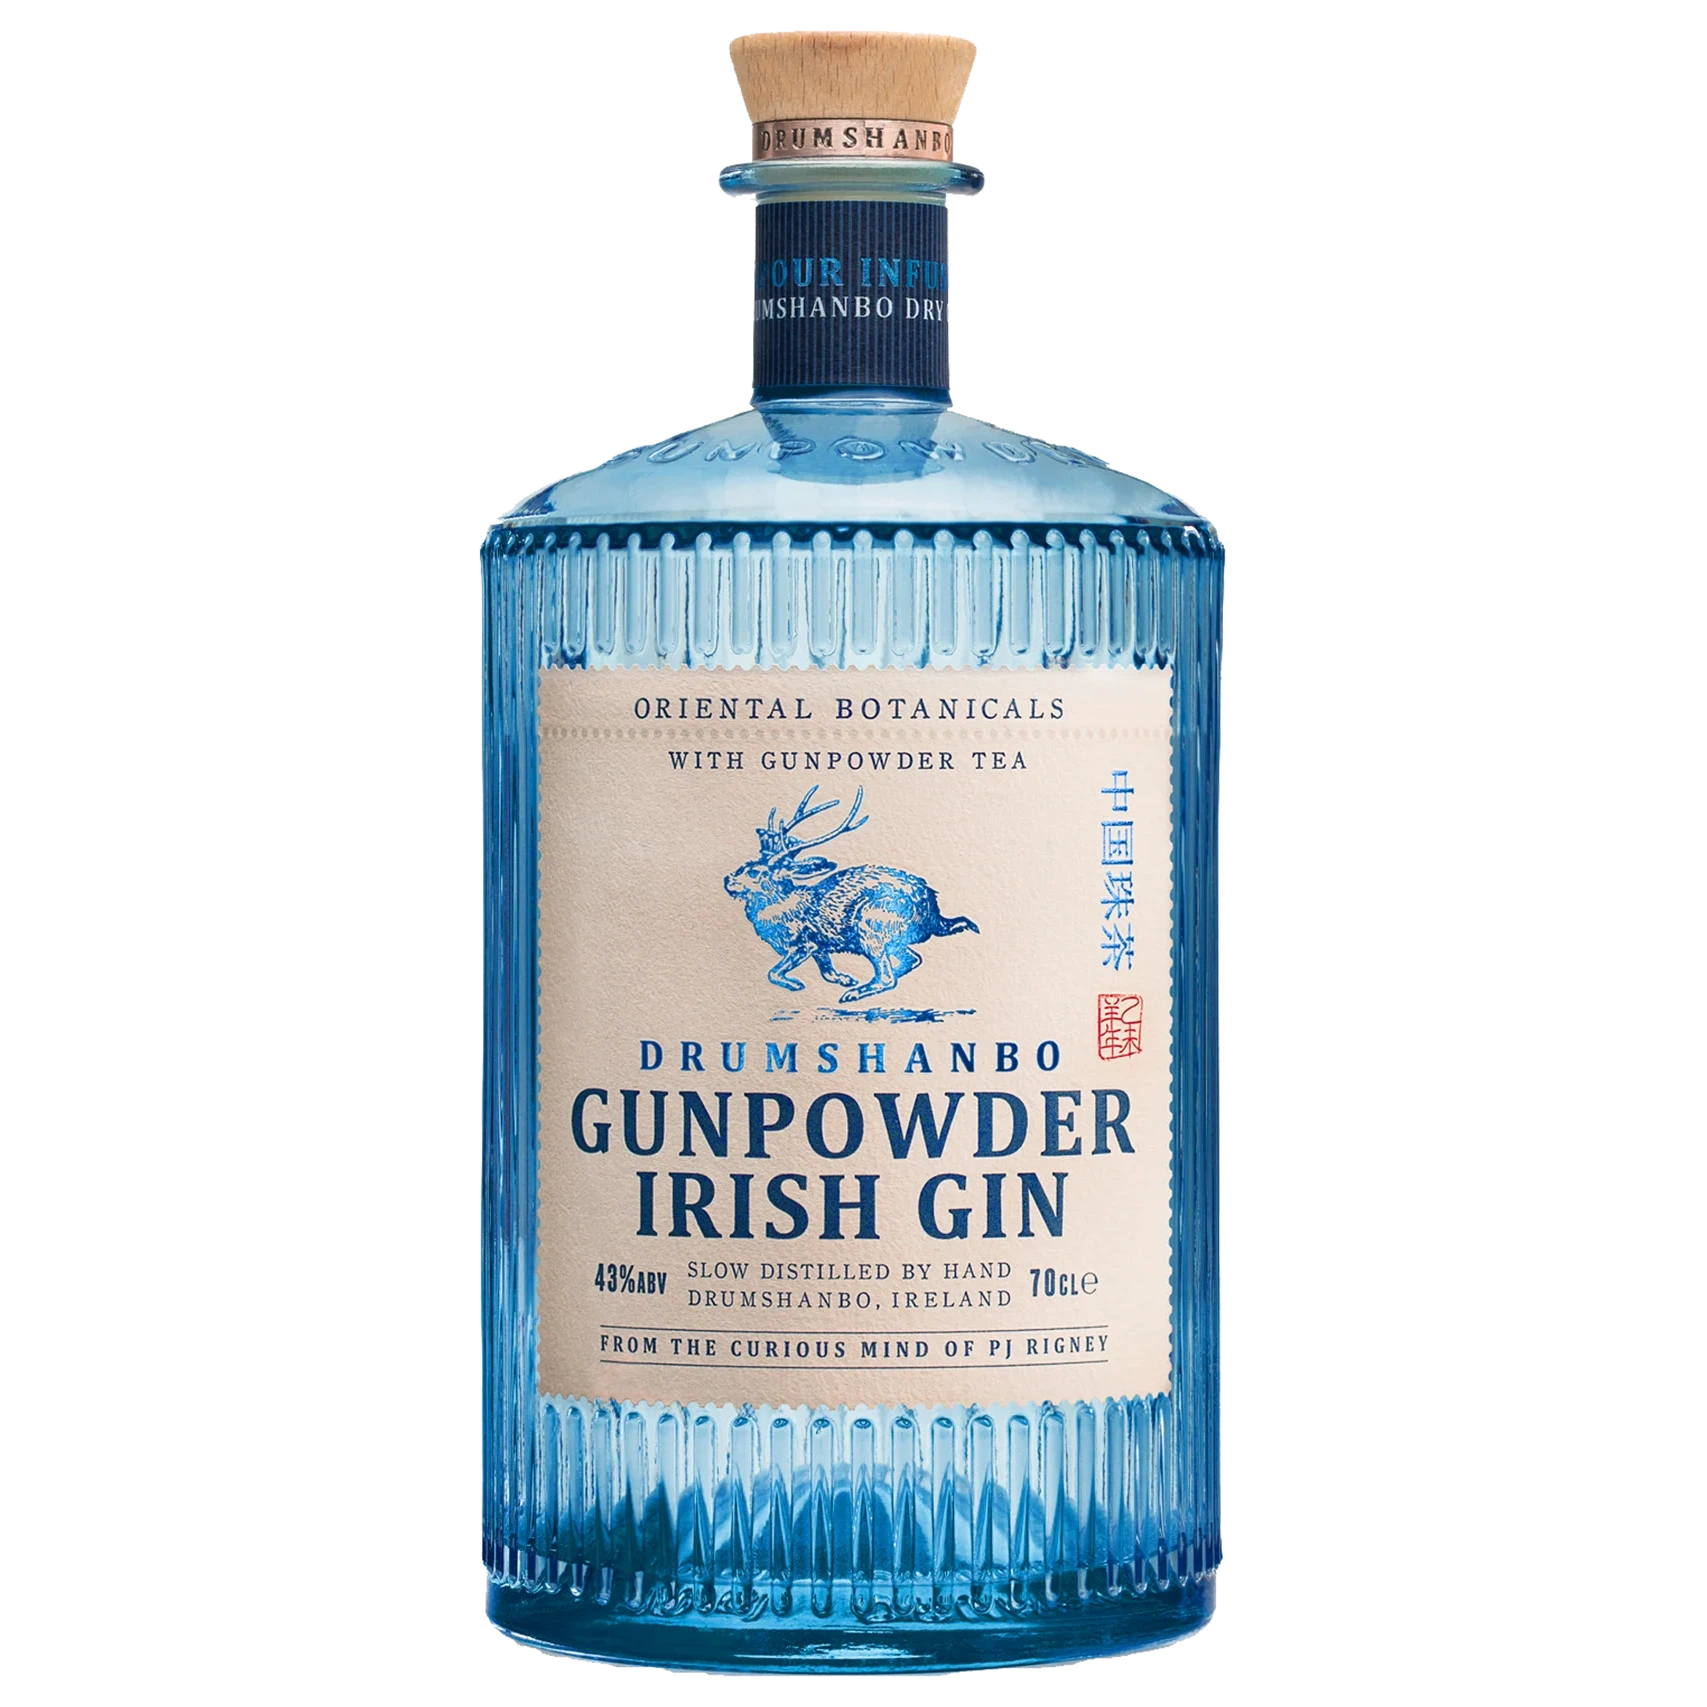 Drumshanbo Gunpowder Irish Gin 700ml